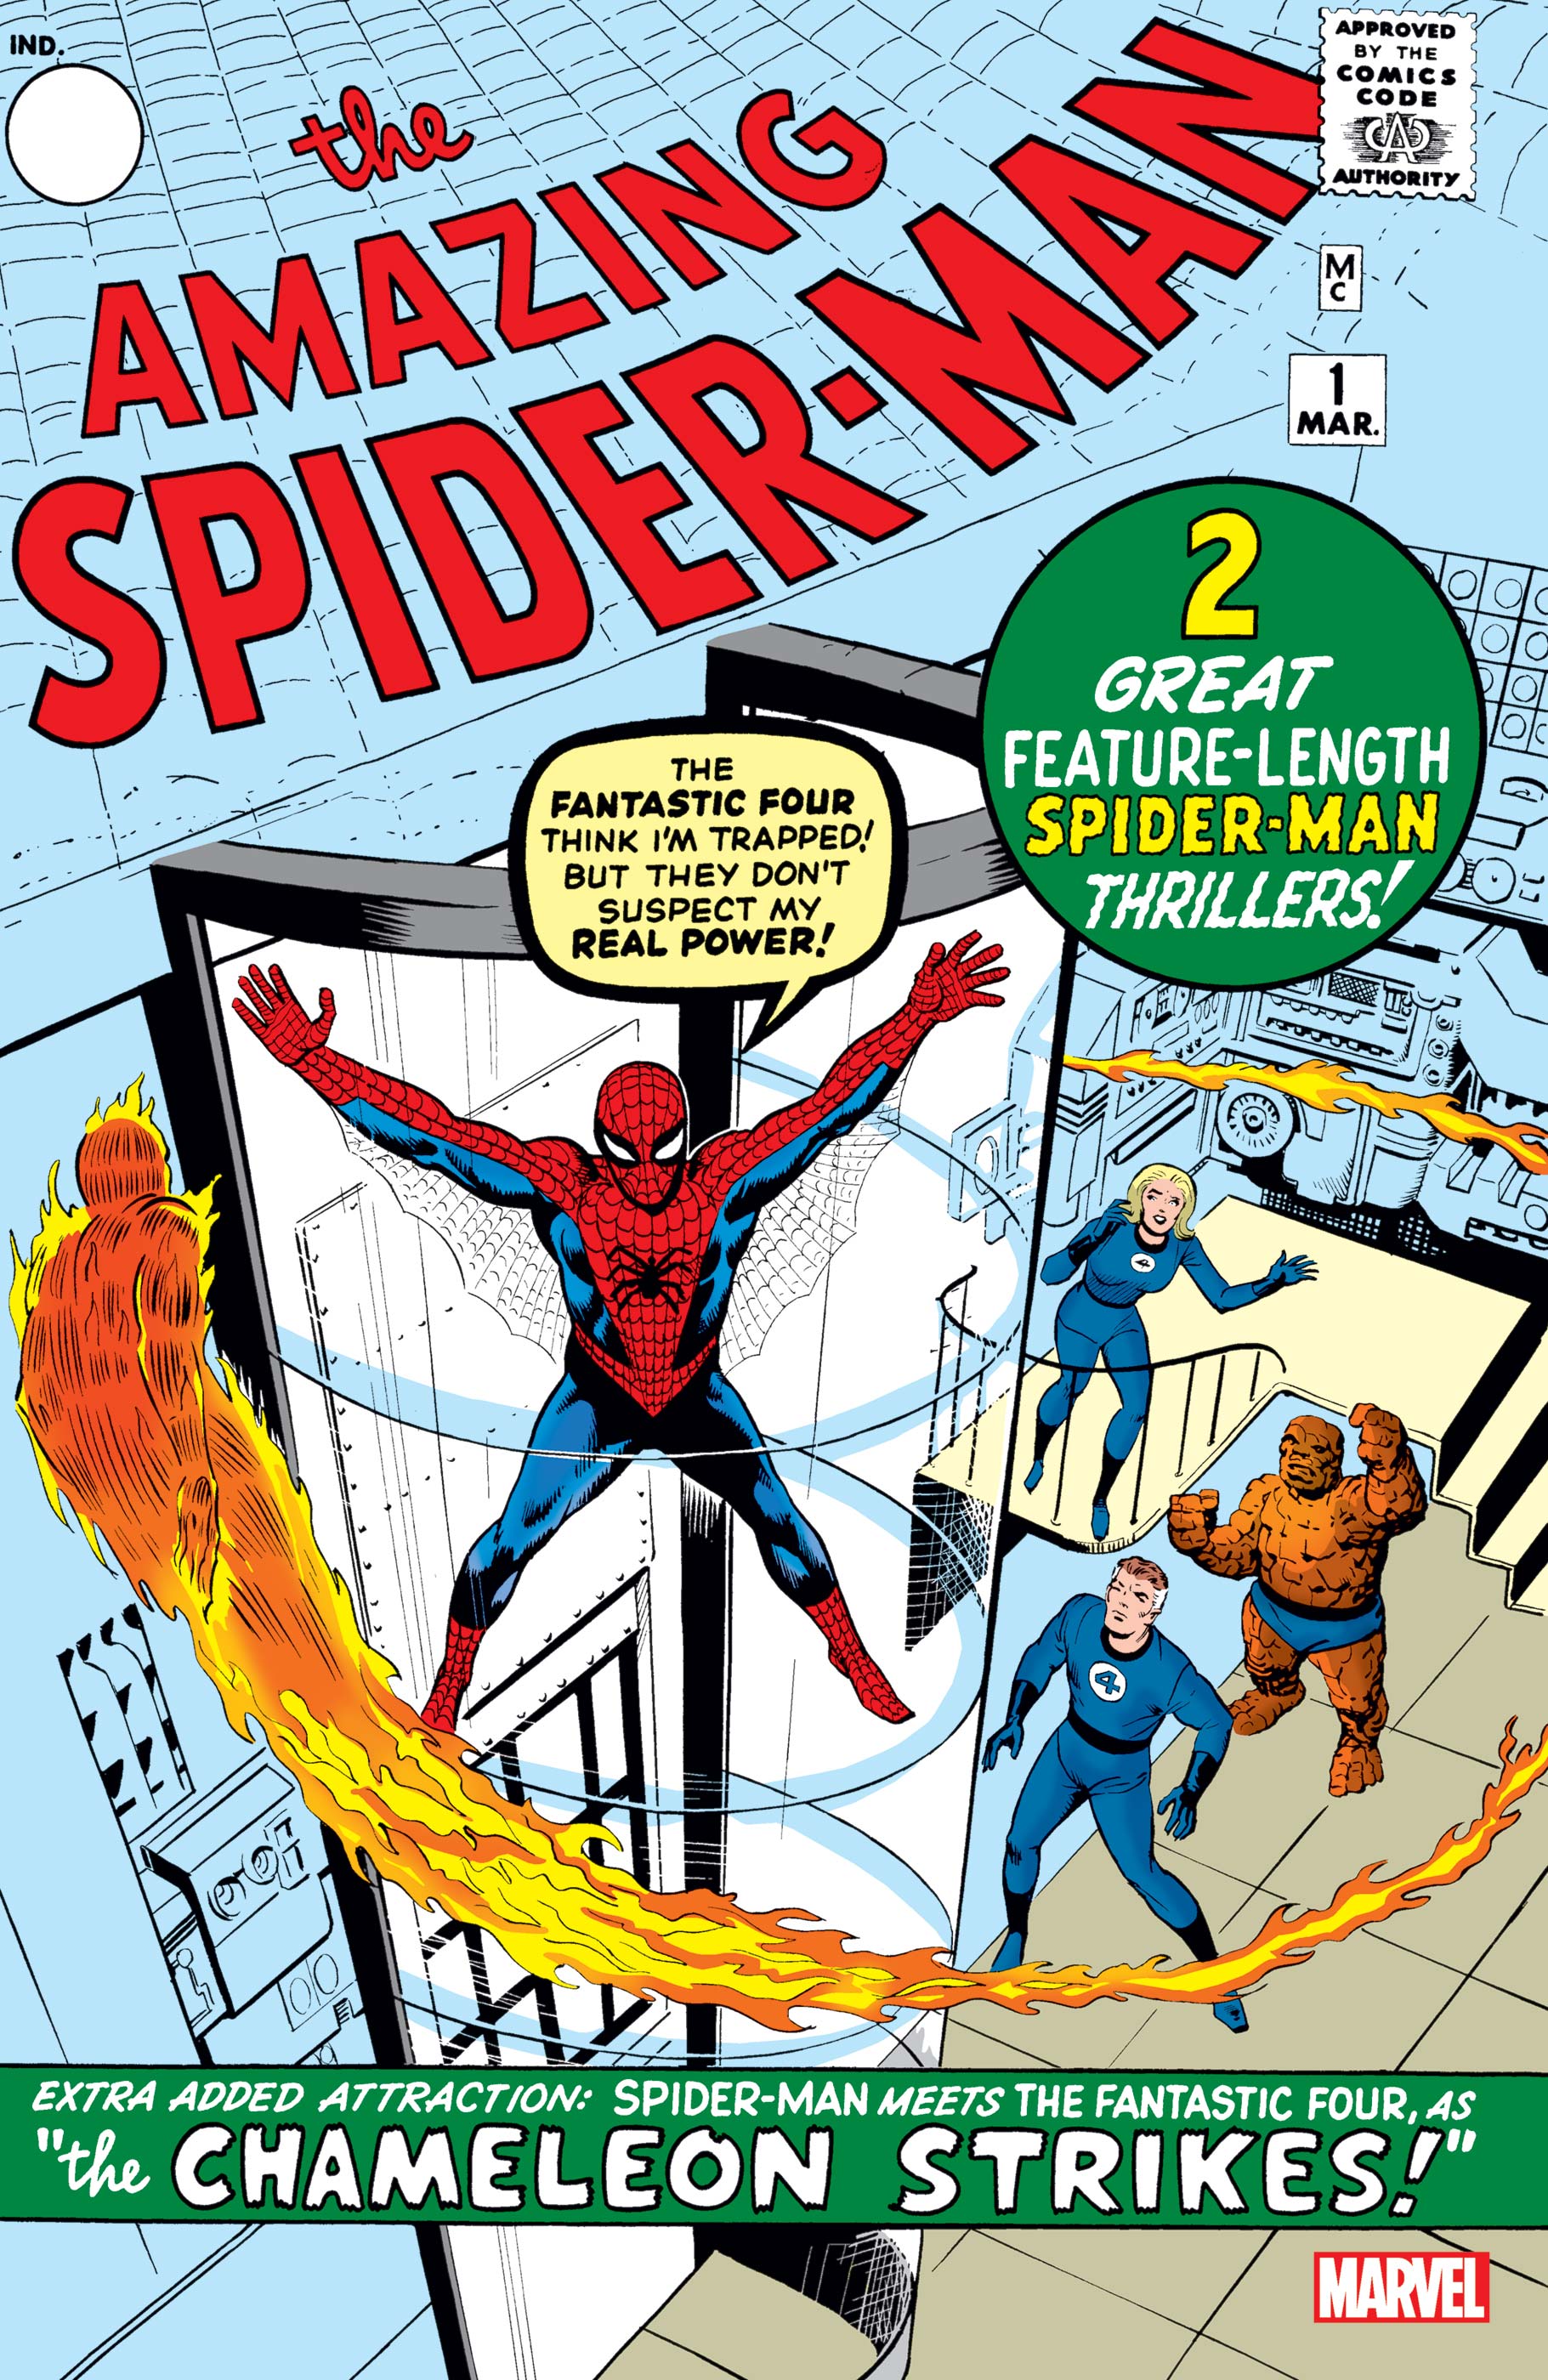 Issue 1 spider man